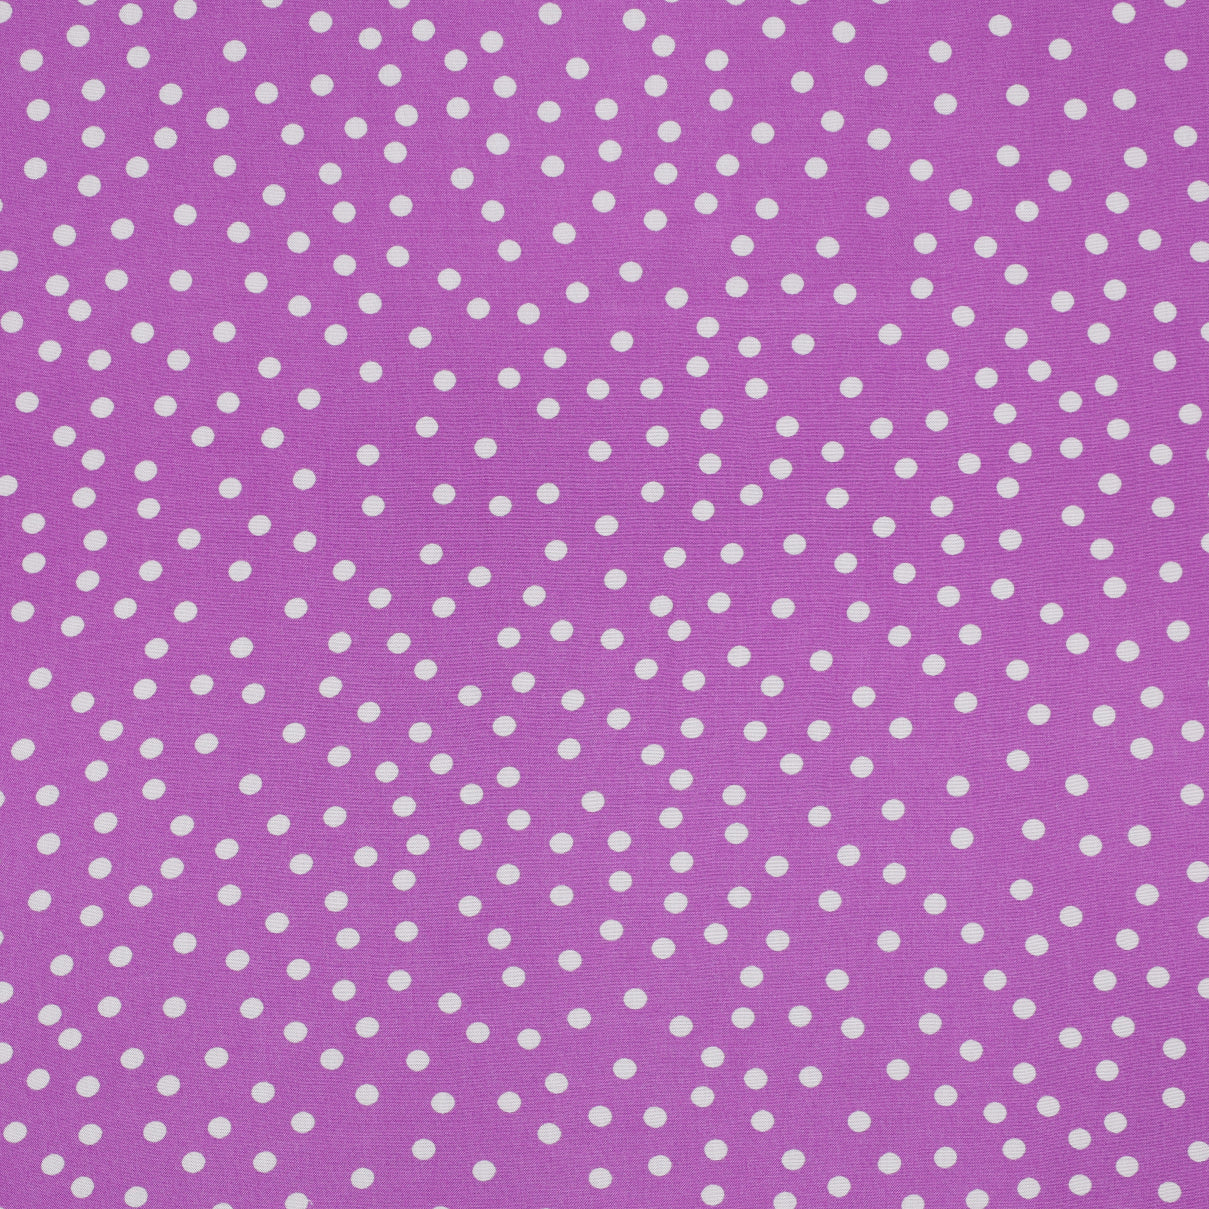 Polka Dot in Violet ViscoseFabric